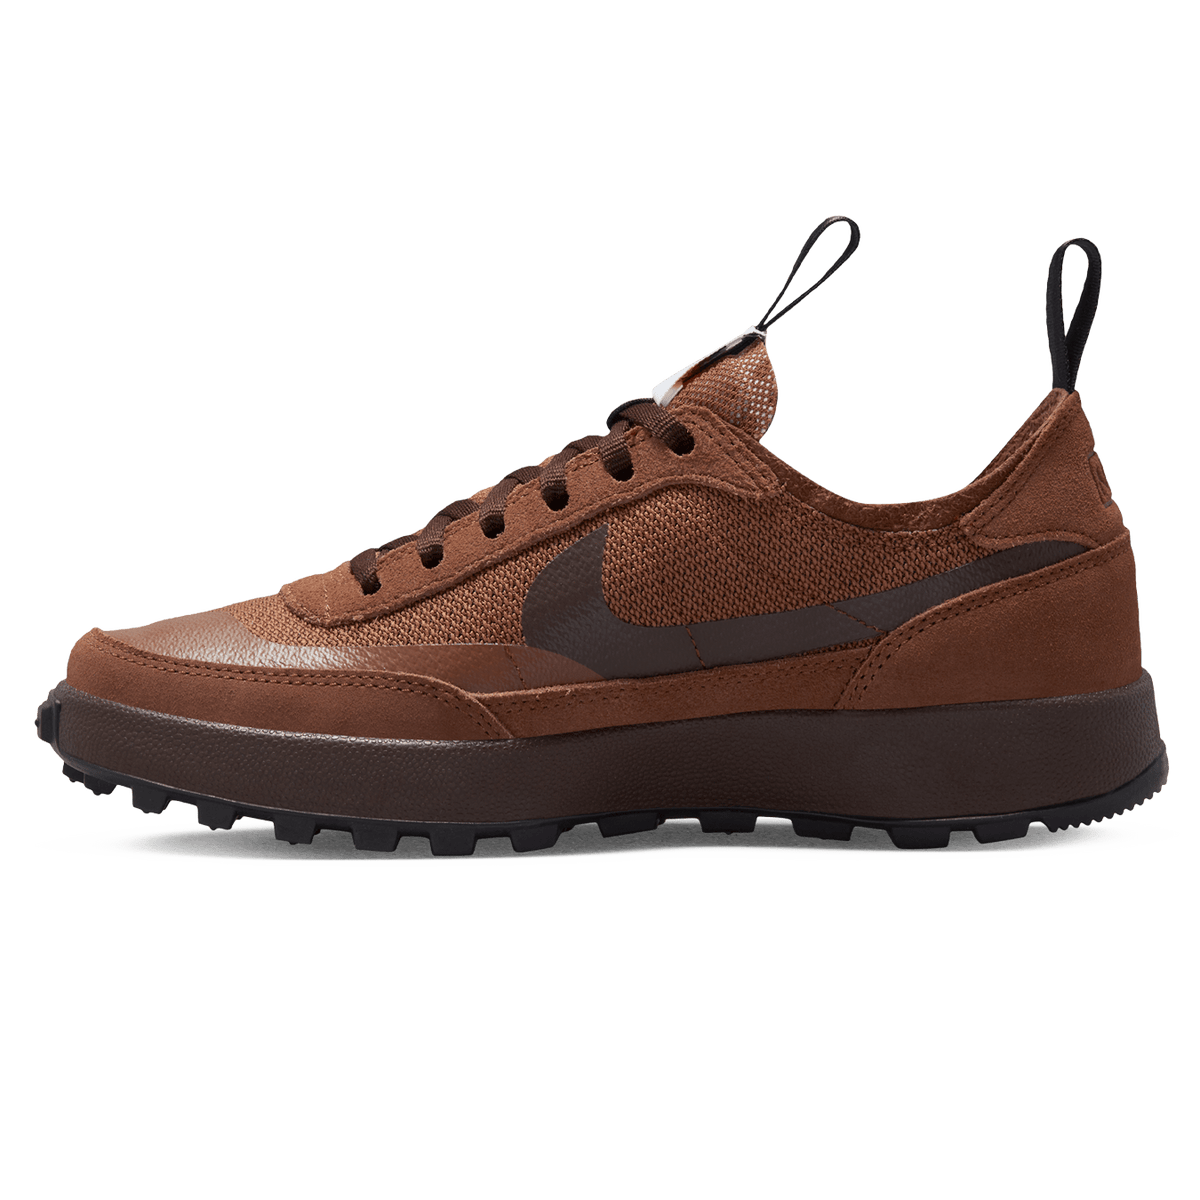 Tom Sachs x NikeCraft General Purpose Shoe 'Brown' - Kick Game